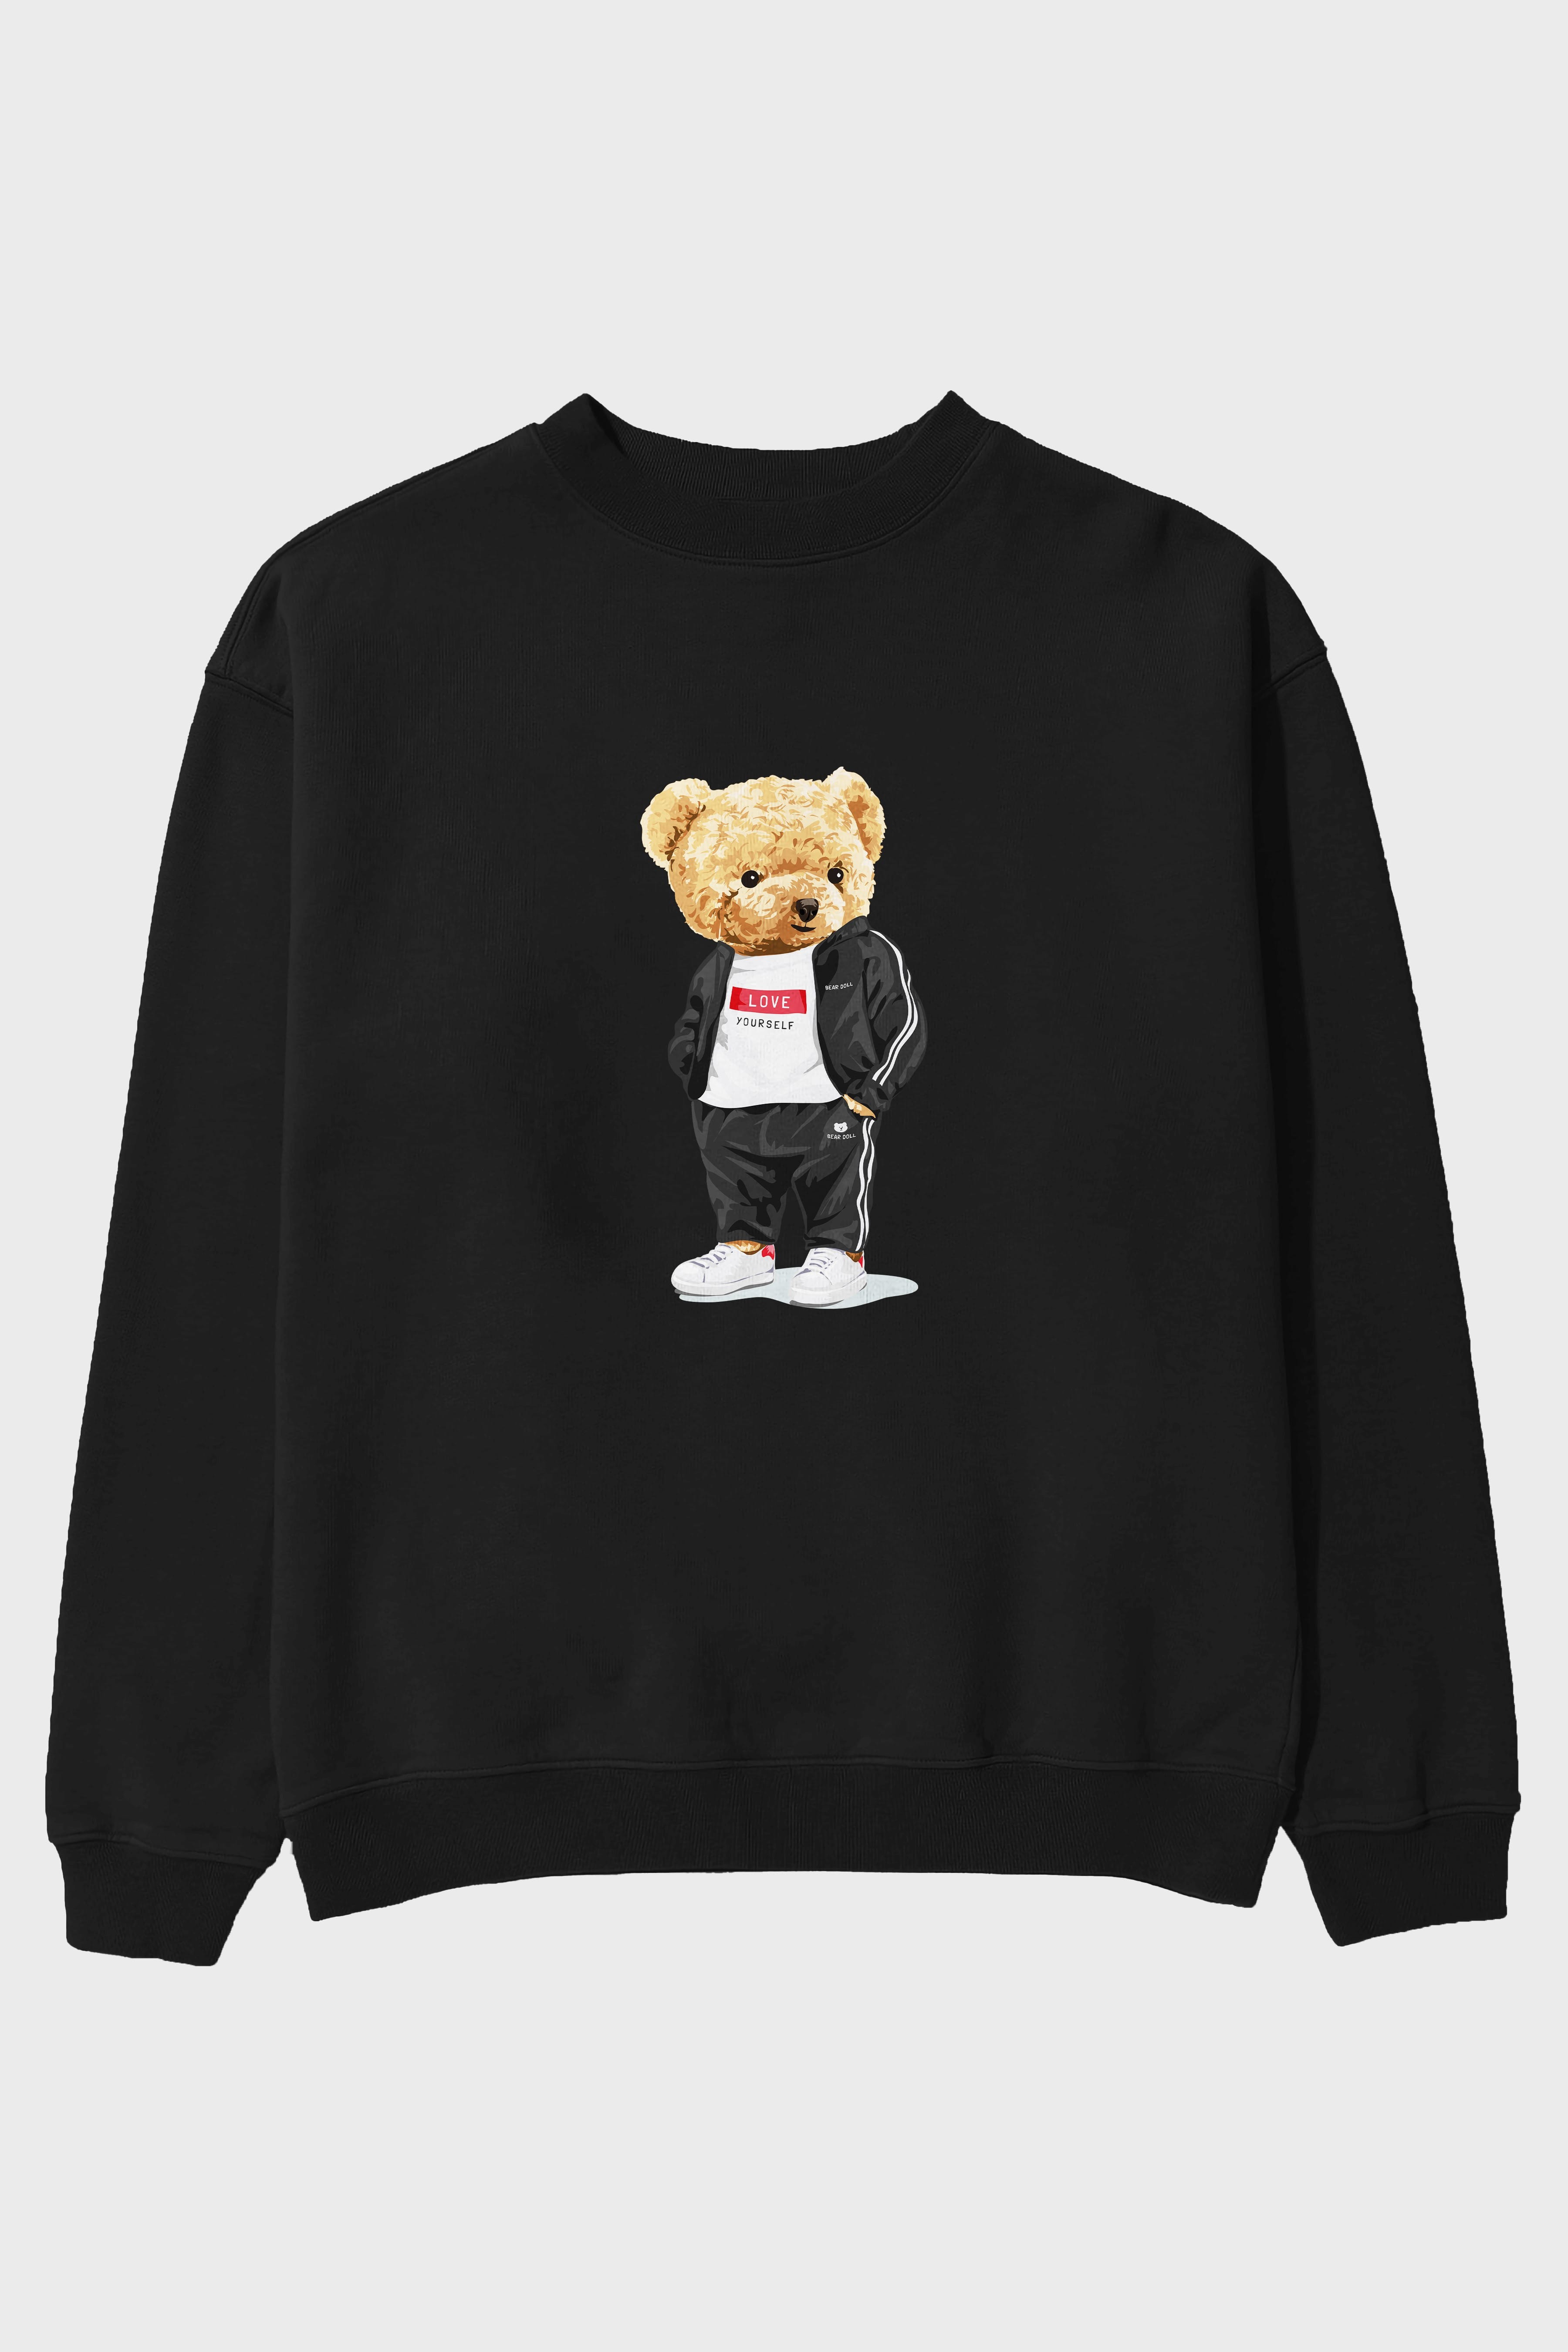 Teddy Bear Love Yourself Ön Baskılı Oversize Sweatshirt Erkek Kadın Unisex